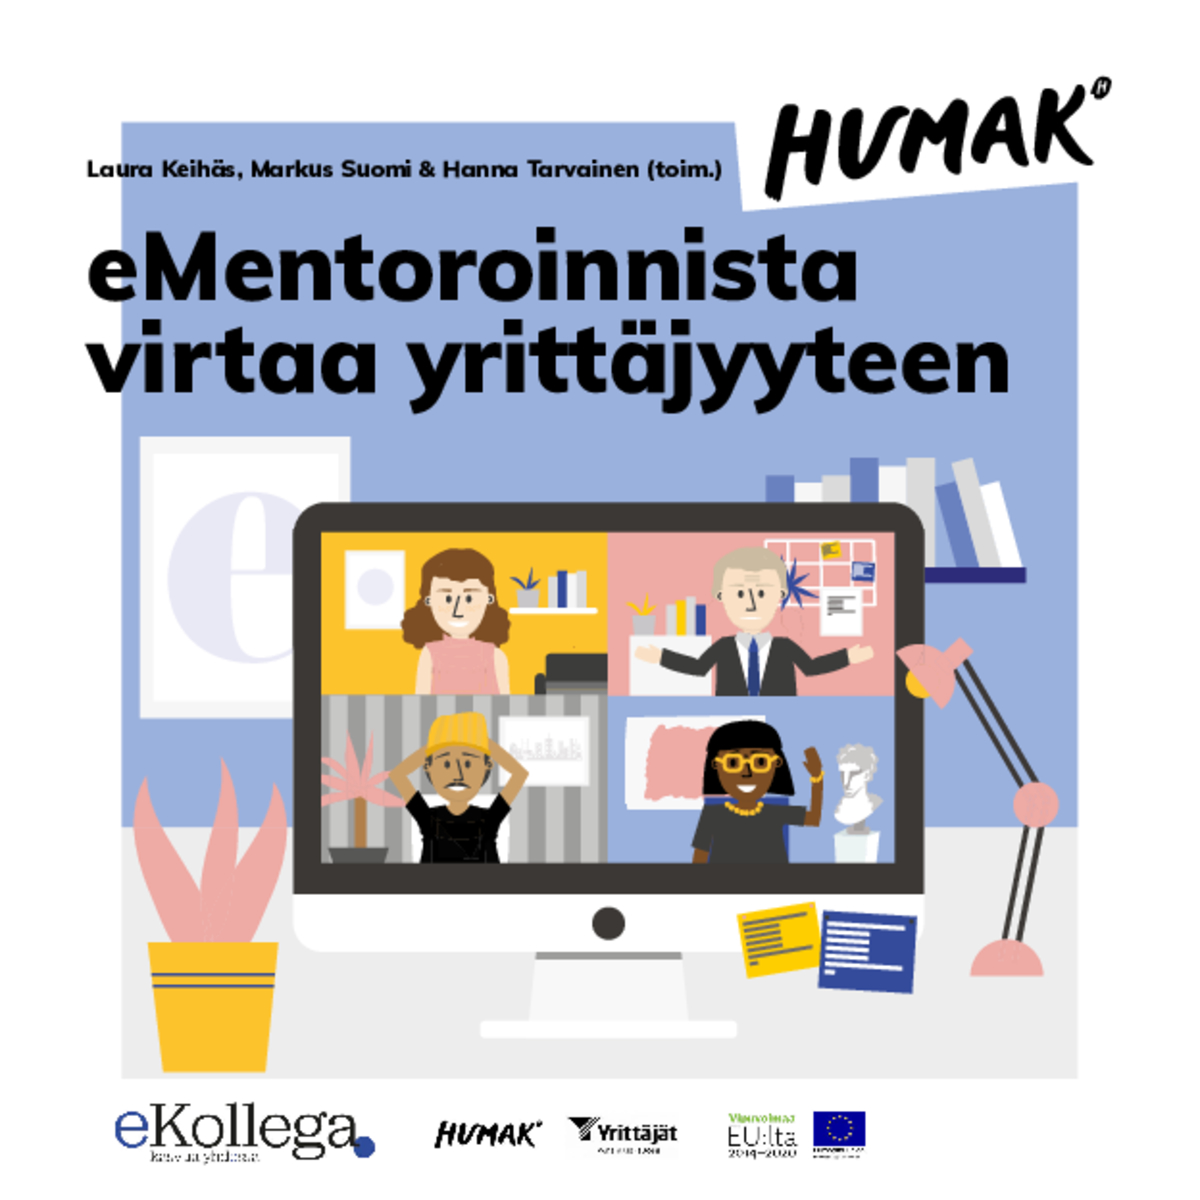 Laura Keihäs, Markus Suomi & Hanna Tarvainen (toim.) eMentoroinnista virtaa yrittäjyyteen